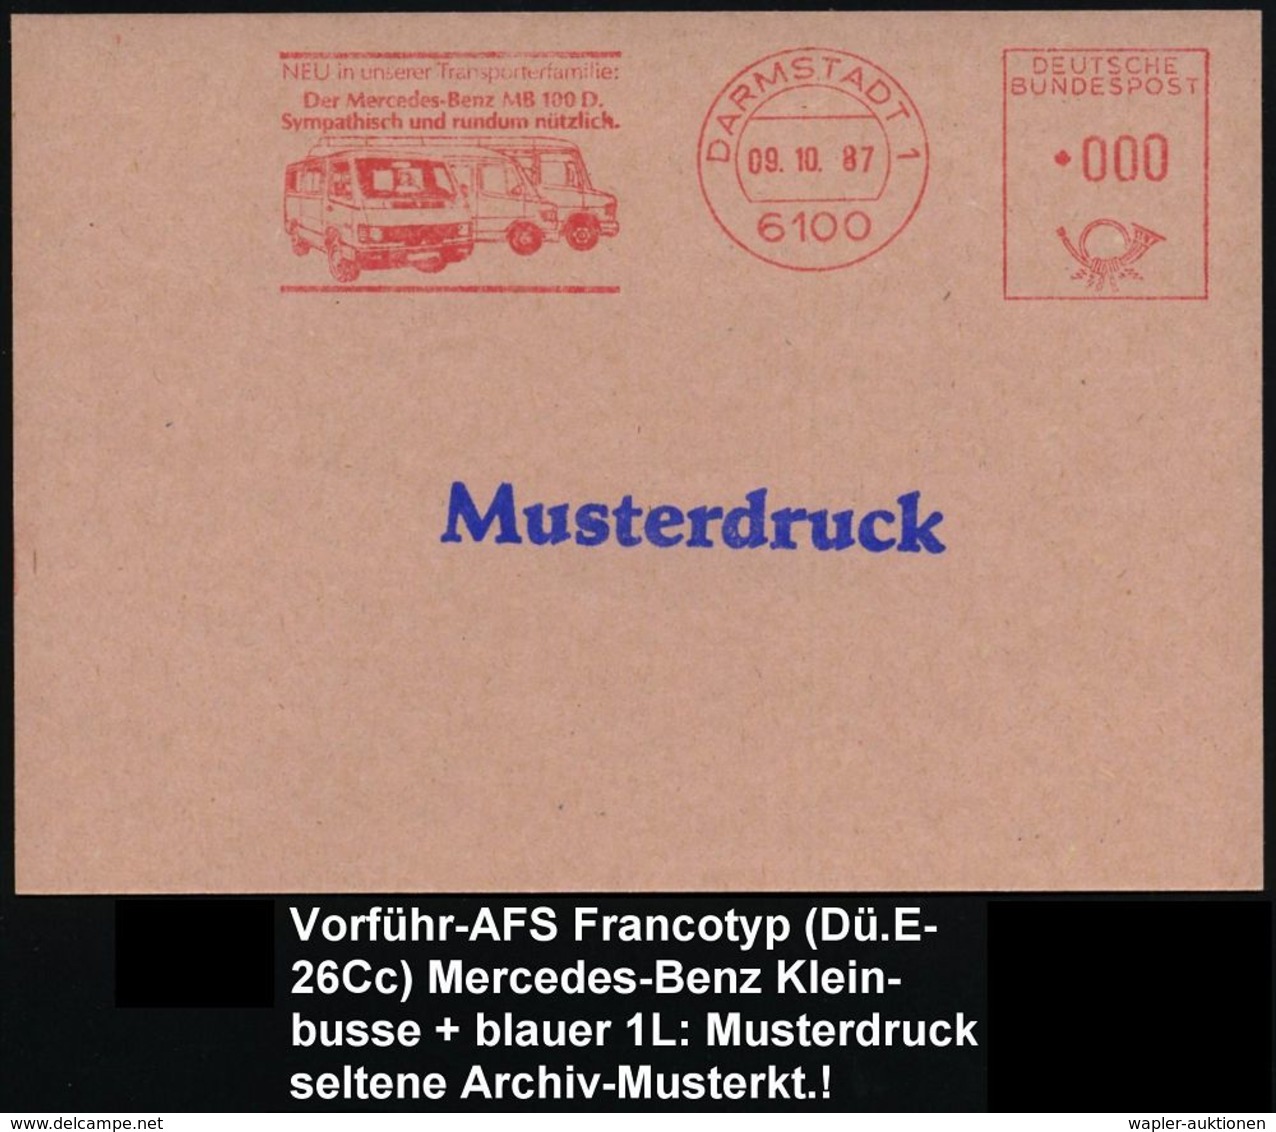 MERCEDES-BENZ  / DAIMLER BENZ : 6100 DARMSTADT 1/ ..Der Mercedes-Benz 100 D... 1987 (9.10.) AFS In 000, Francoty-Archiv- - Voitures